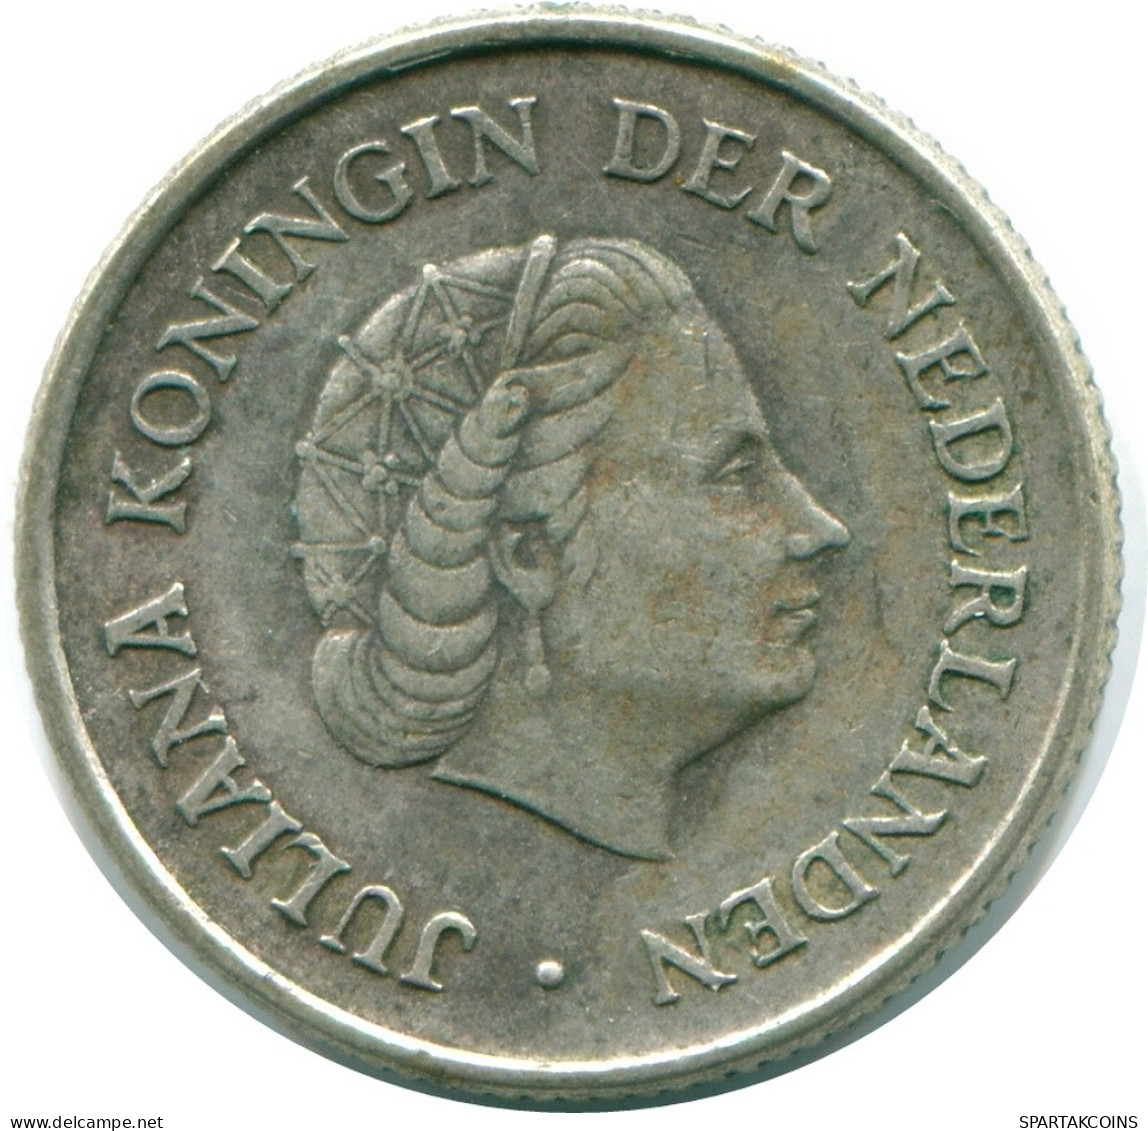 1/4 GULDEN 1970 NIEDERLÄNDISCHE ANTILLEN SILBER Koloniale Münze #NL11709.4.D.A - Antilles Néerlandaises